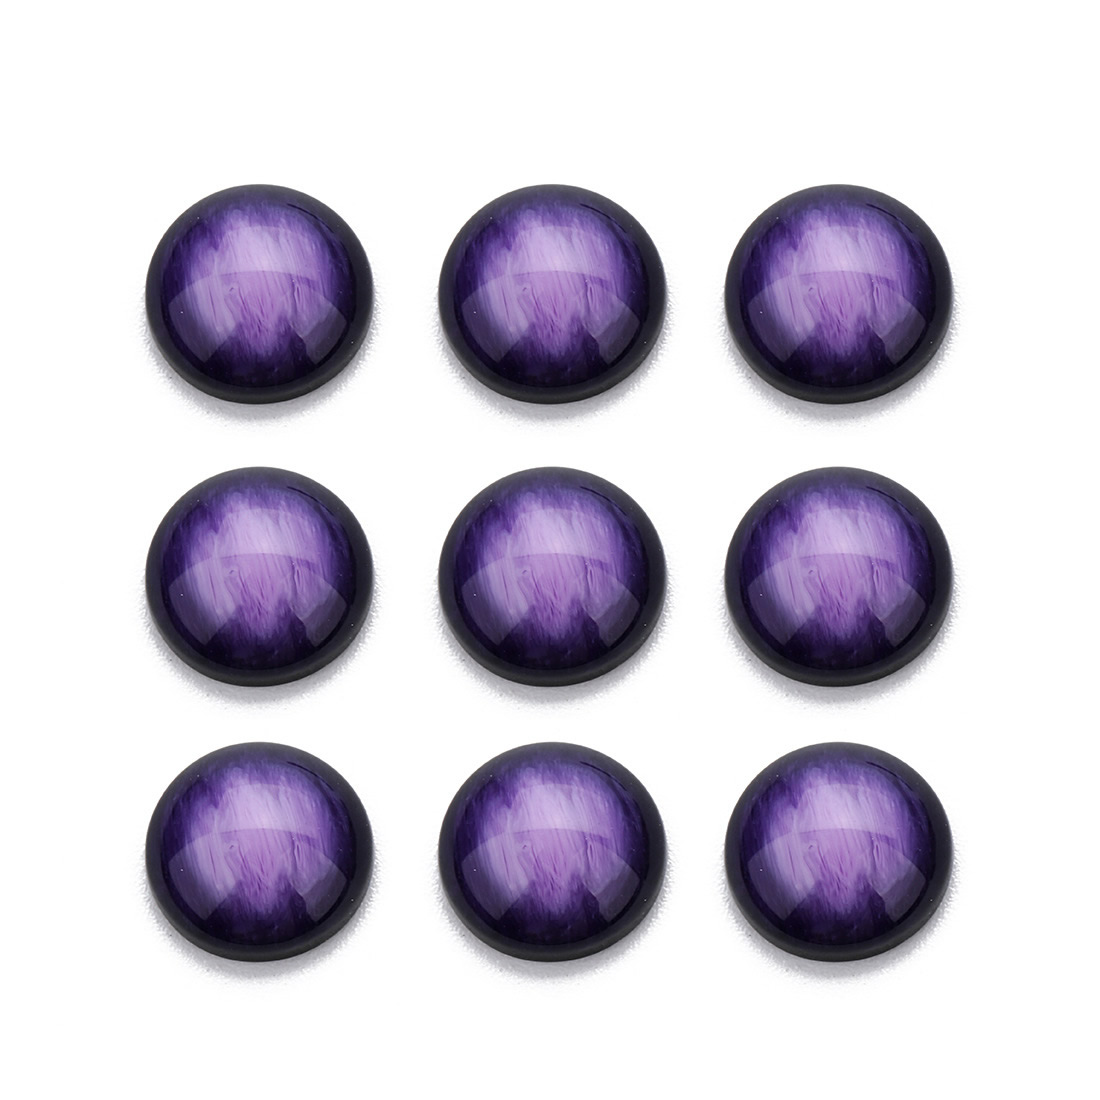 8 violett